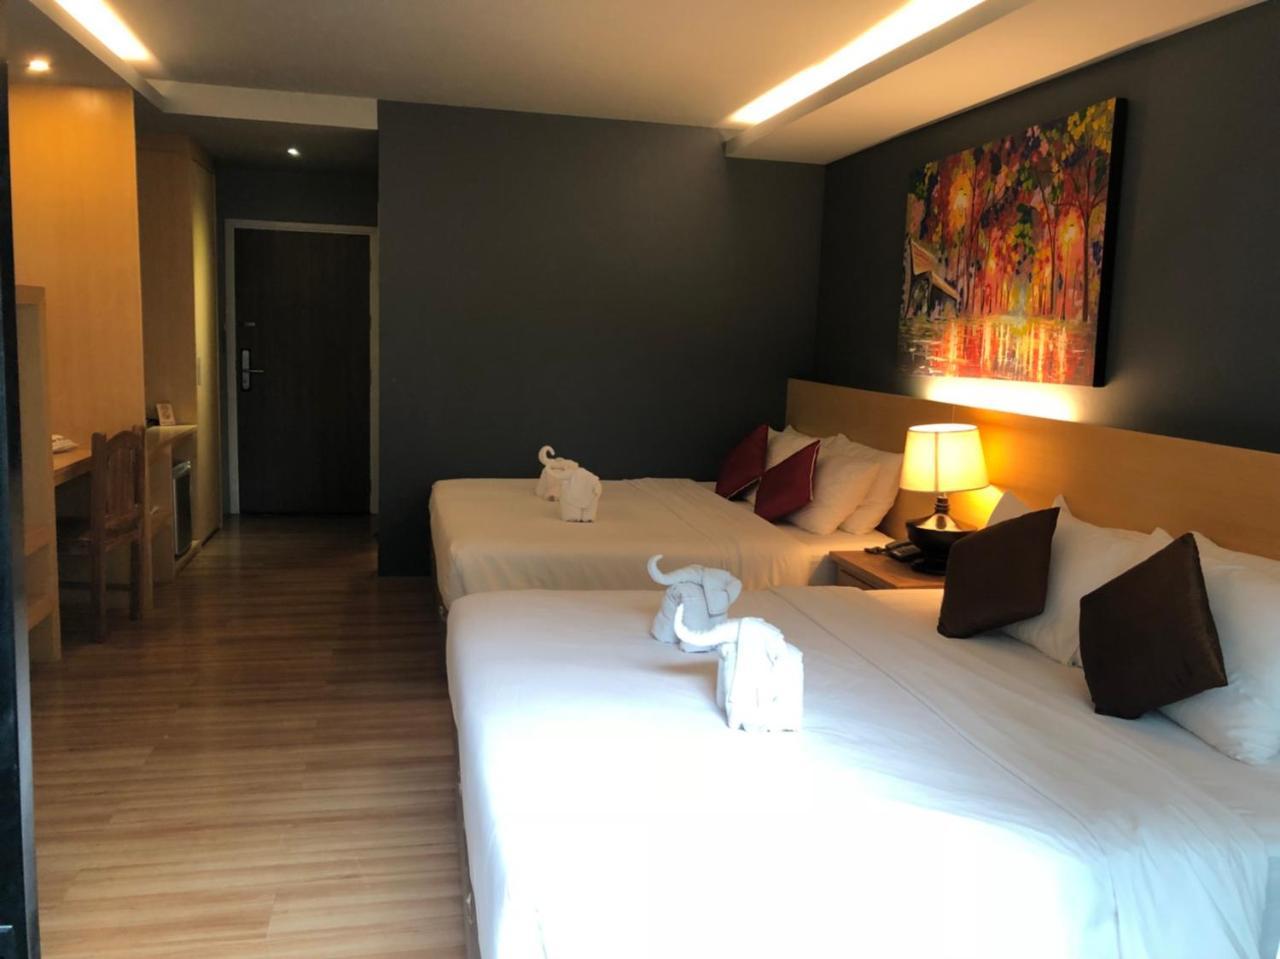 מלון צ'יאנג מאי Le Naview @Prasingh מראה חיצוני תמונה